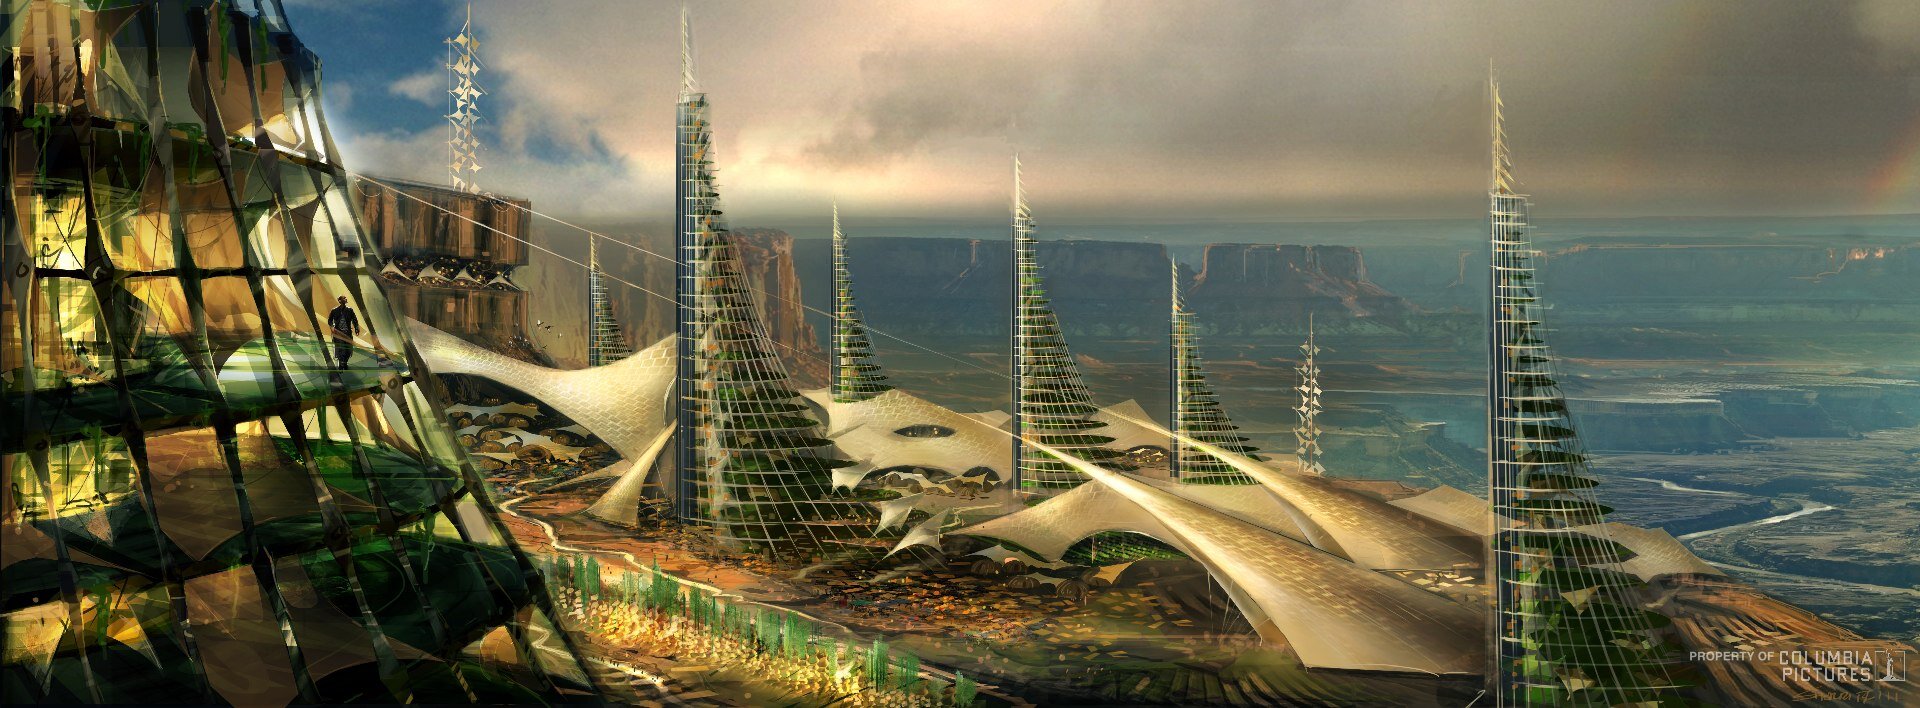 Город новой эры. Планета Нова Прайм после нашей эры. Архитектура будущего. Архитектура будущего рисунок. После нашей эры корабль.